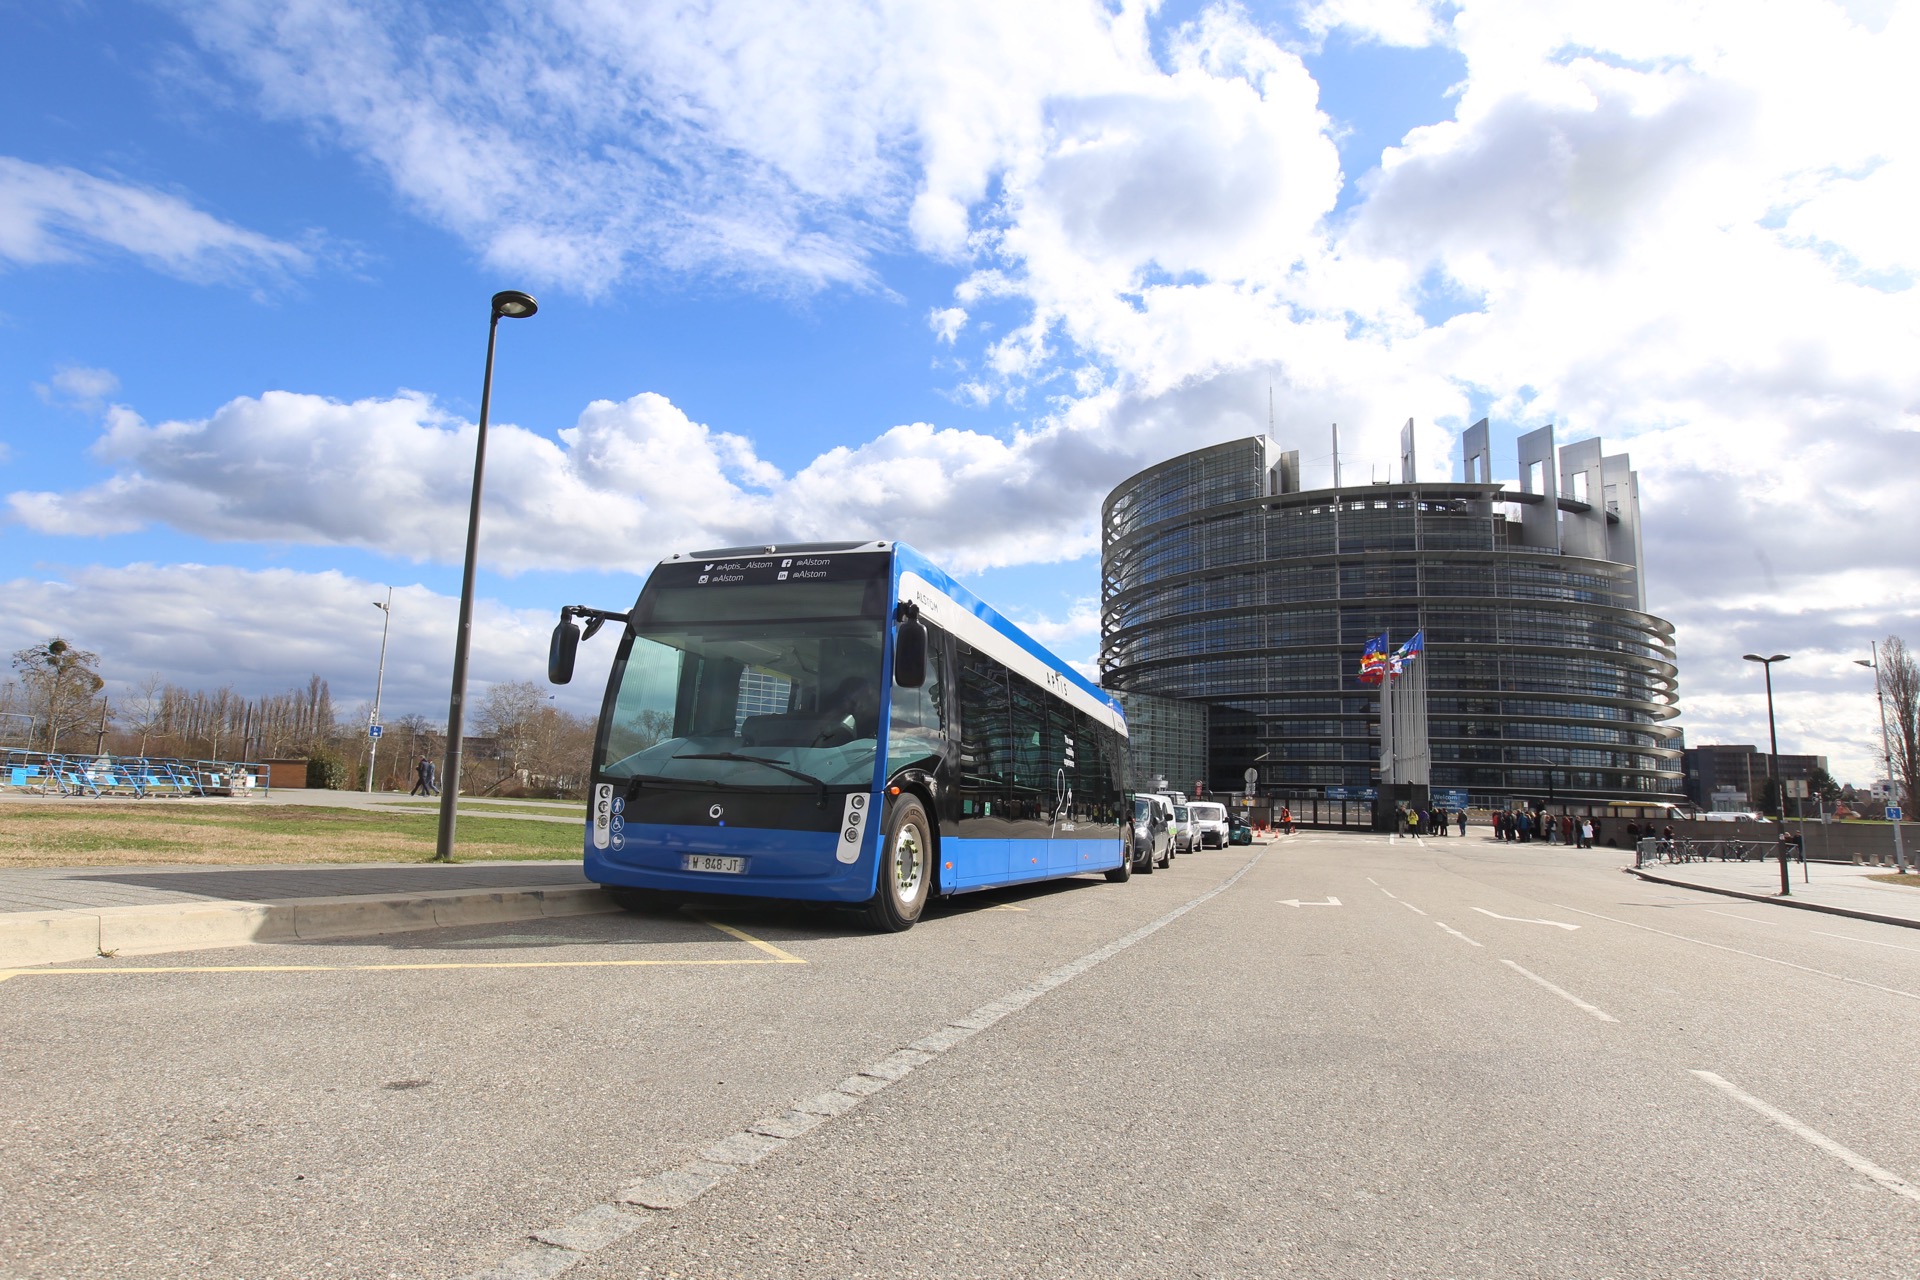 Bus elettrici: in arrivo a Strasburgo 12 Aptis firmati Alstom